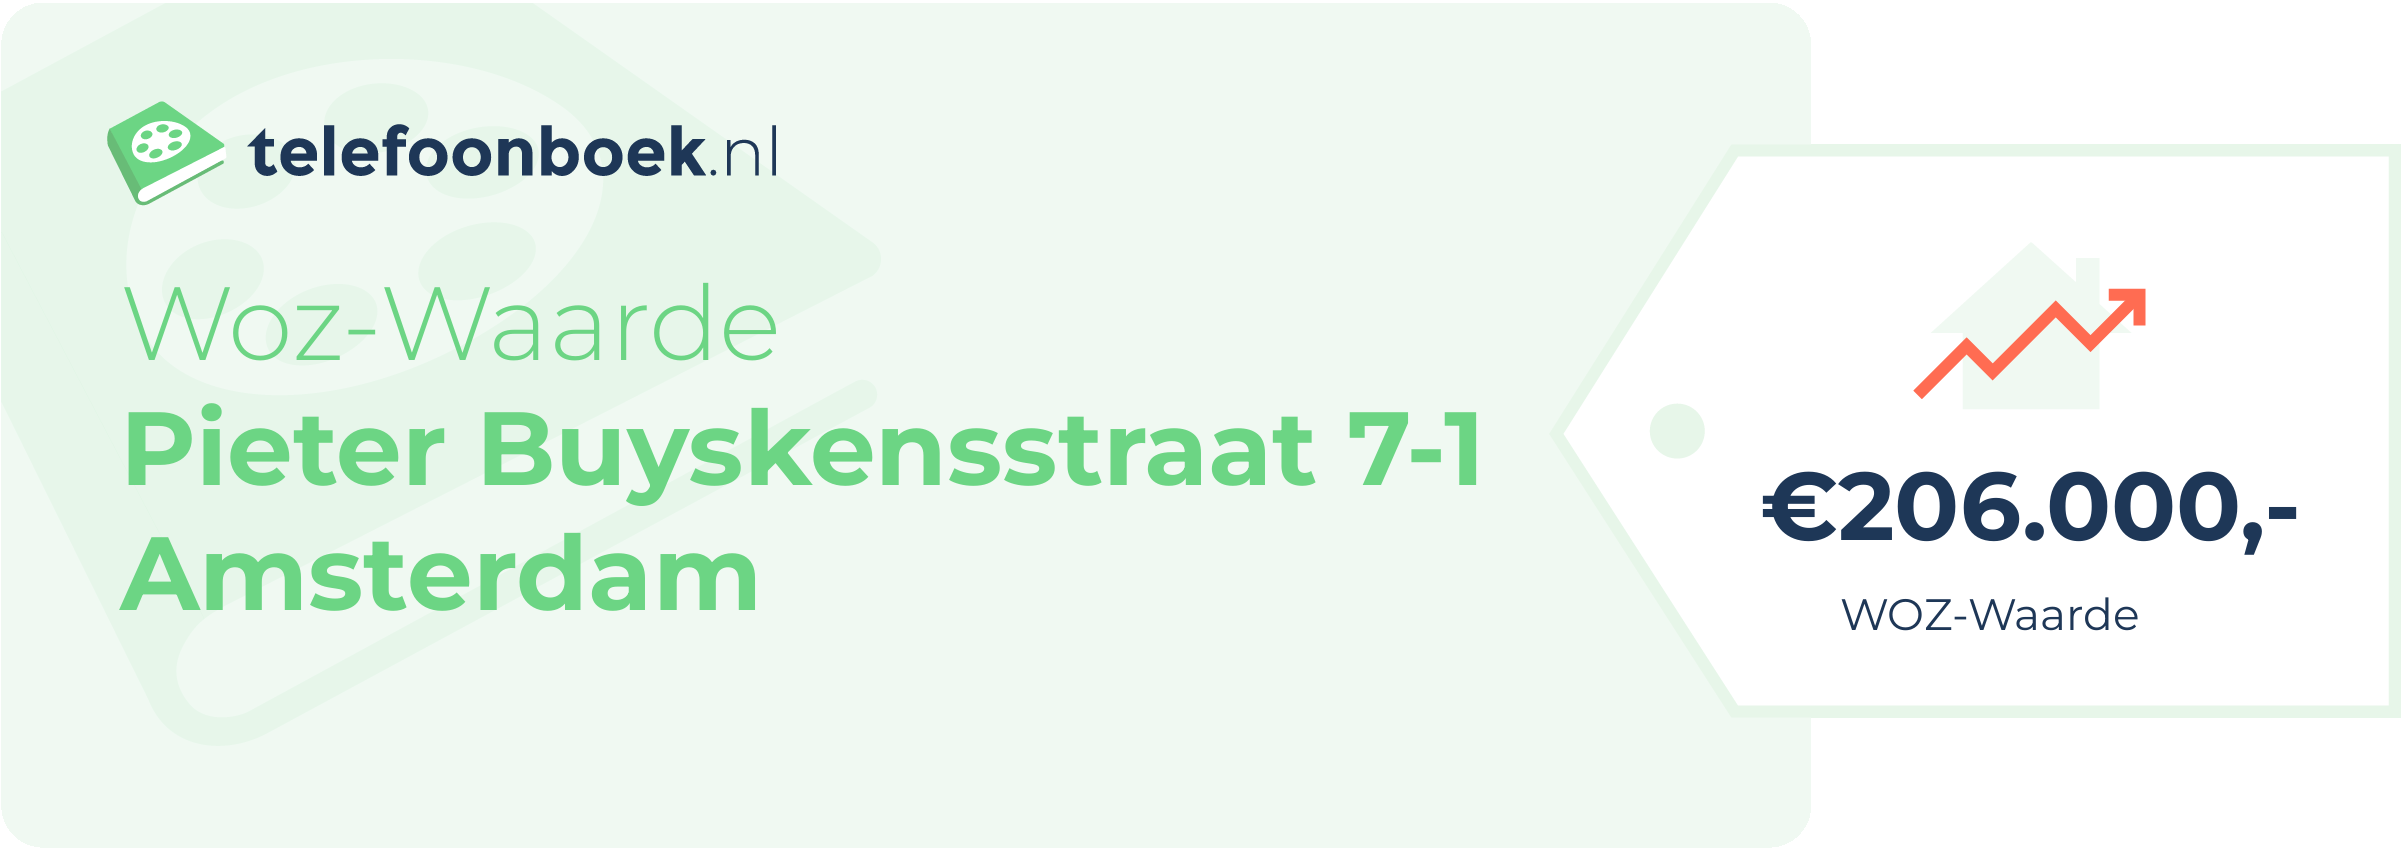 WOZ-waarde Pieter Buyskensstraat 7-1 Amsterdam